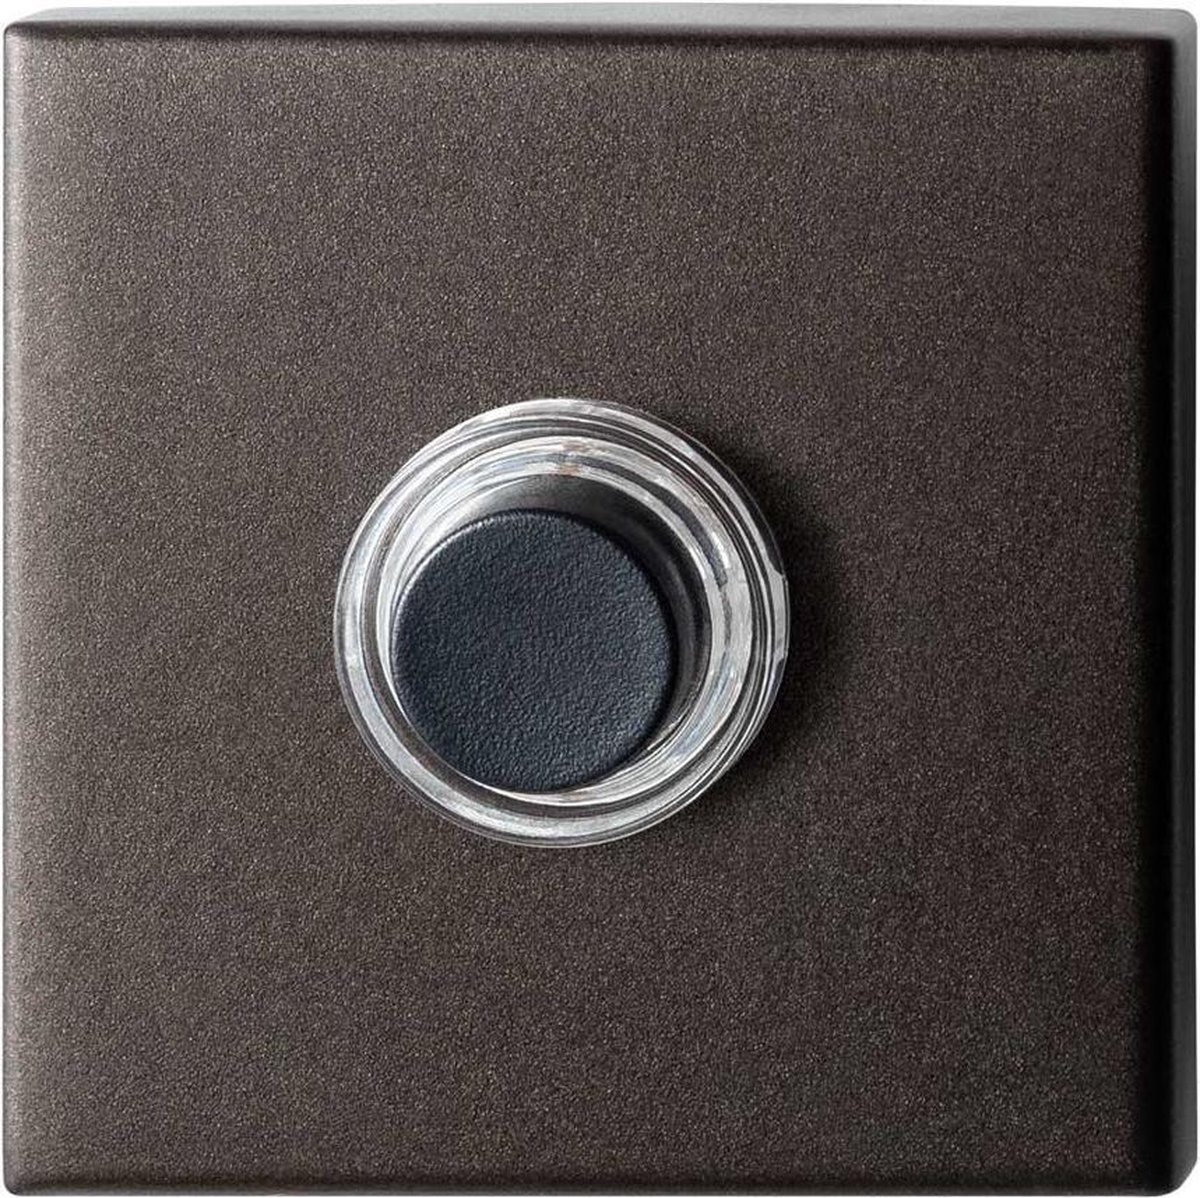 GPF9826.A1.1102 deurbel met zwarte button vierkant 50x50x8 mm Dark blend